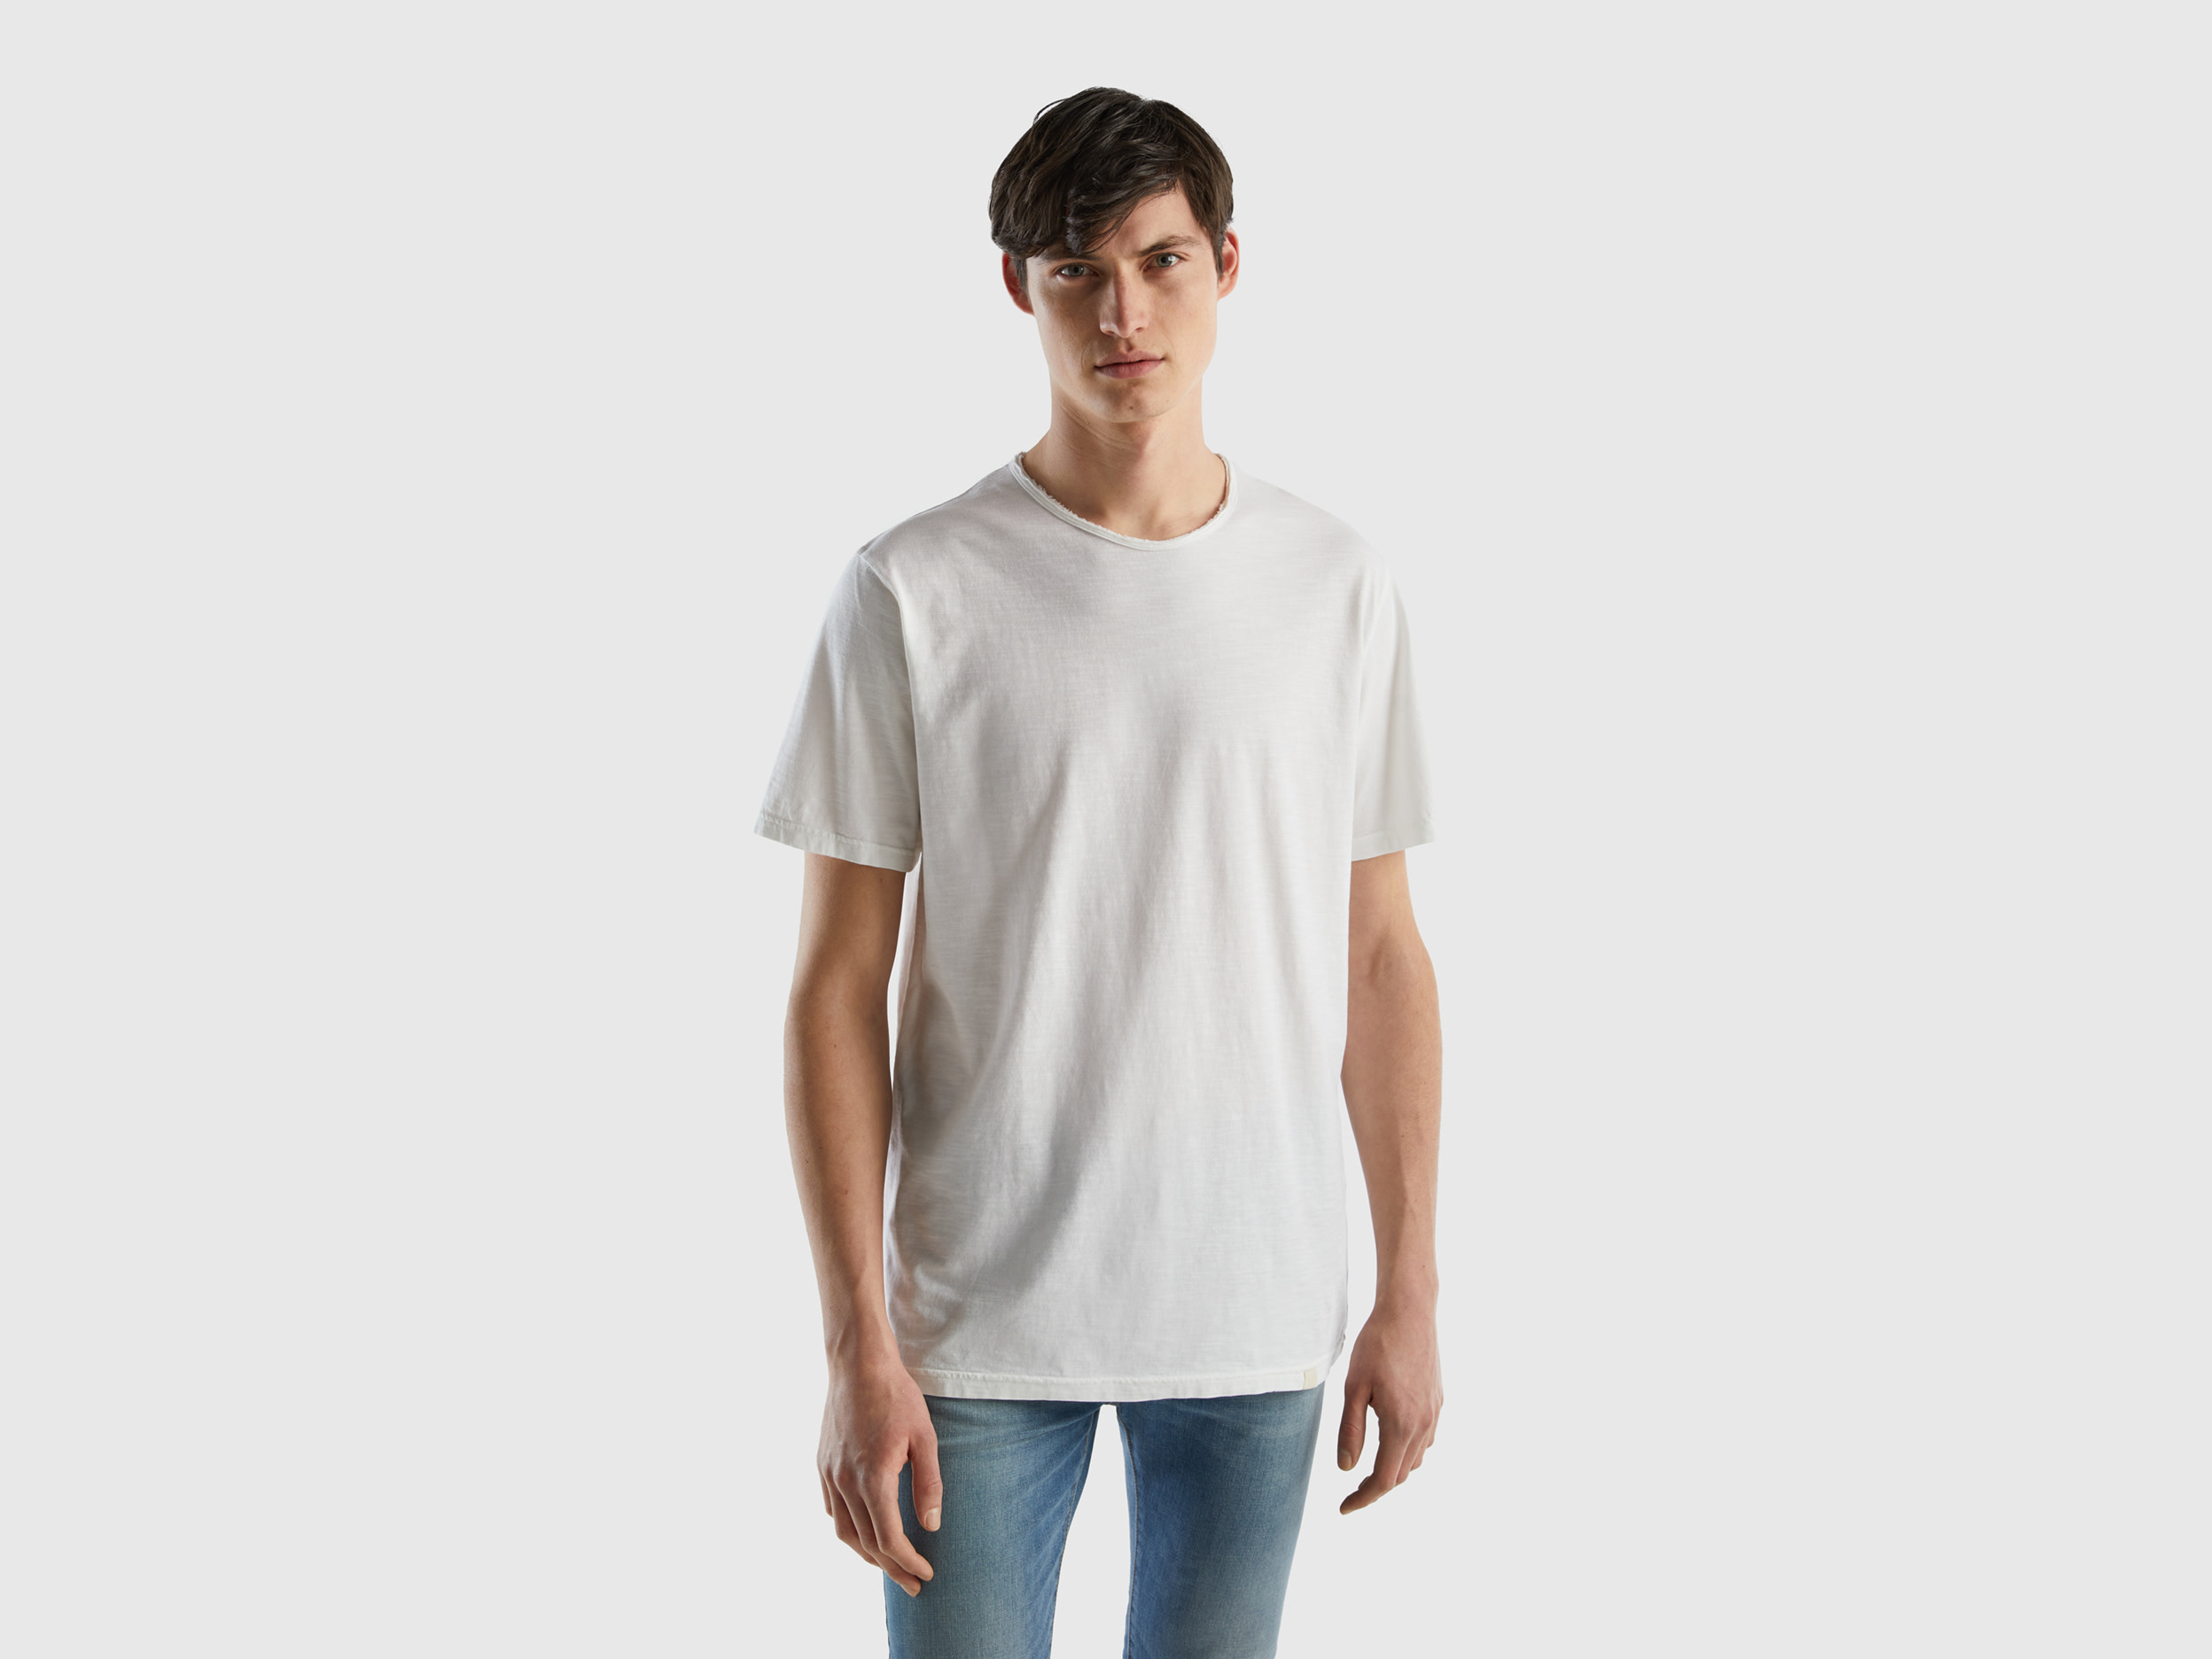 Benetton, White T-shirt In Slub Cotton, size XXL, White, Men